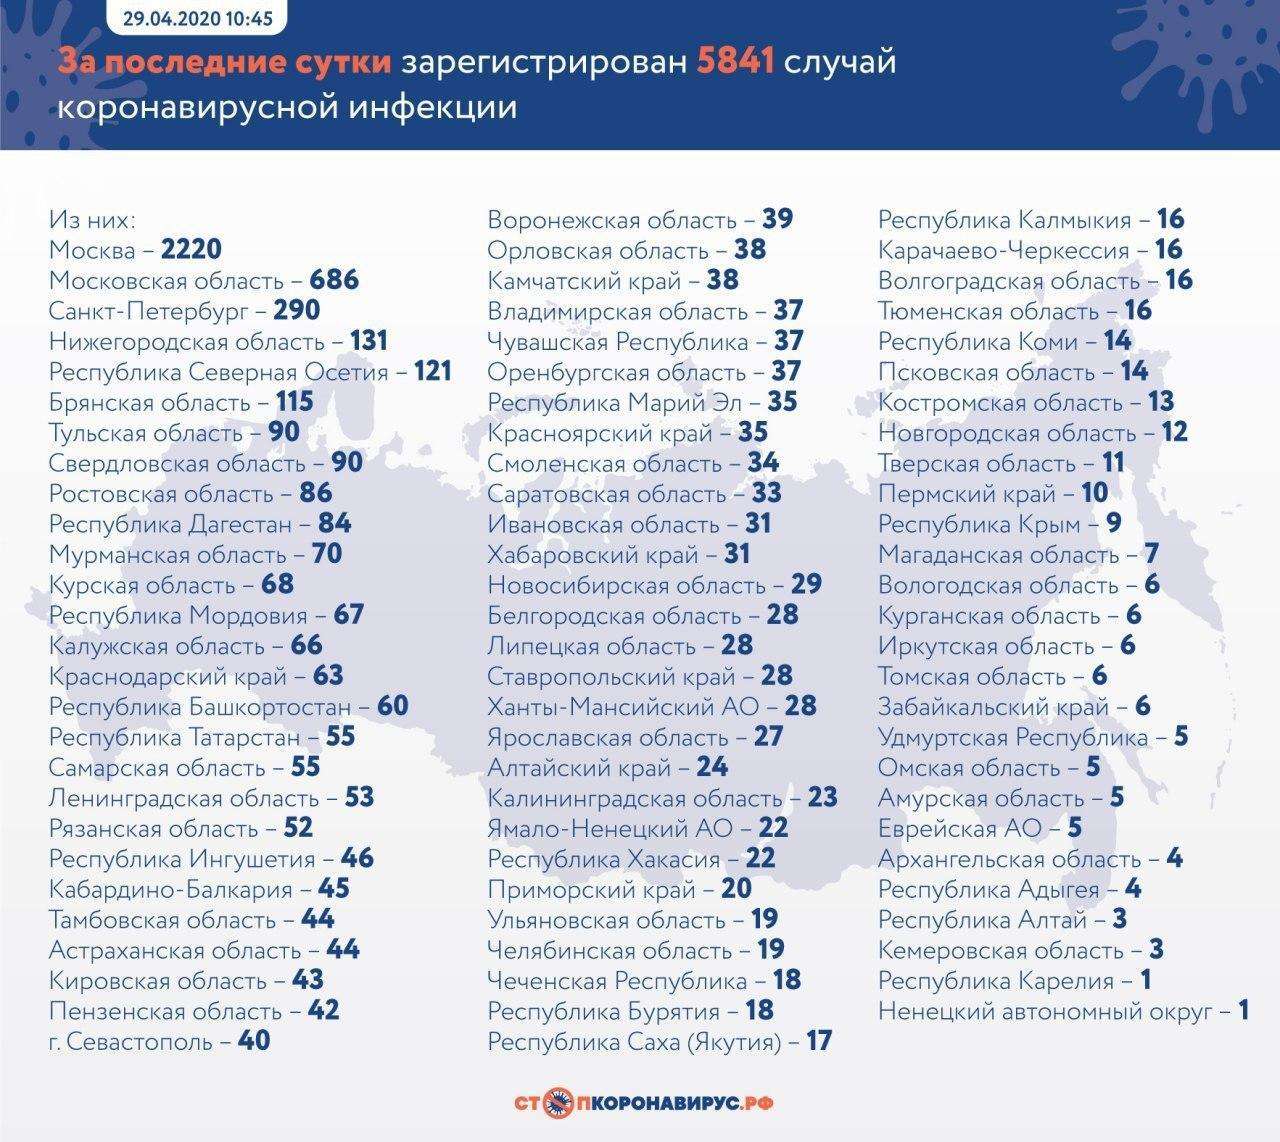 Почти 100 тыс. заболевших коронавирусом в России на 29 апреля